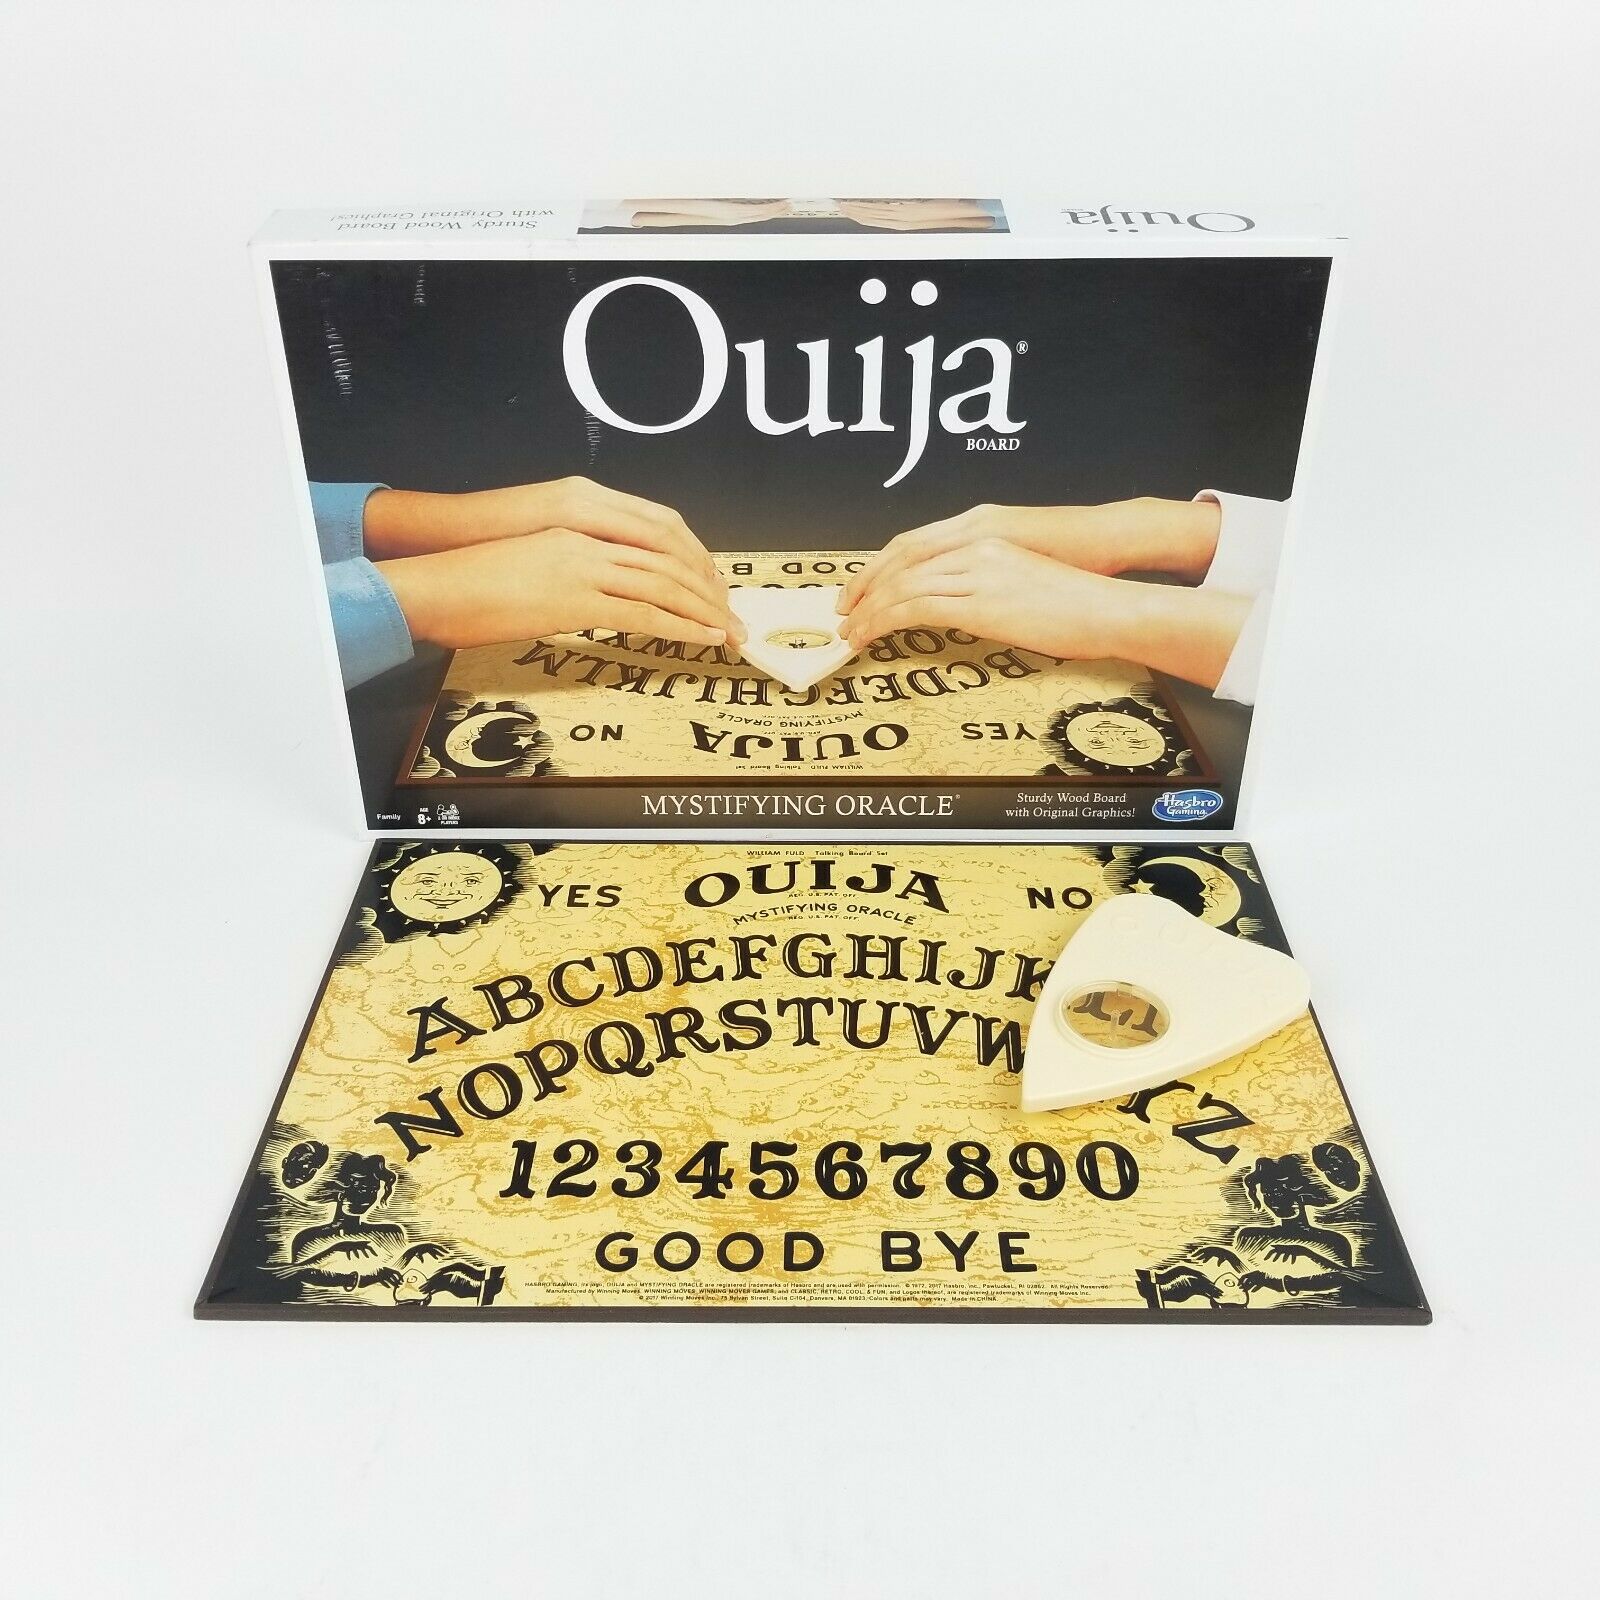 Ouija Hasbro Games Classic Ouija Board Game Mystifying Oracle Used